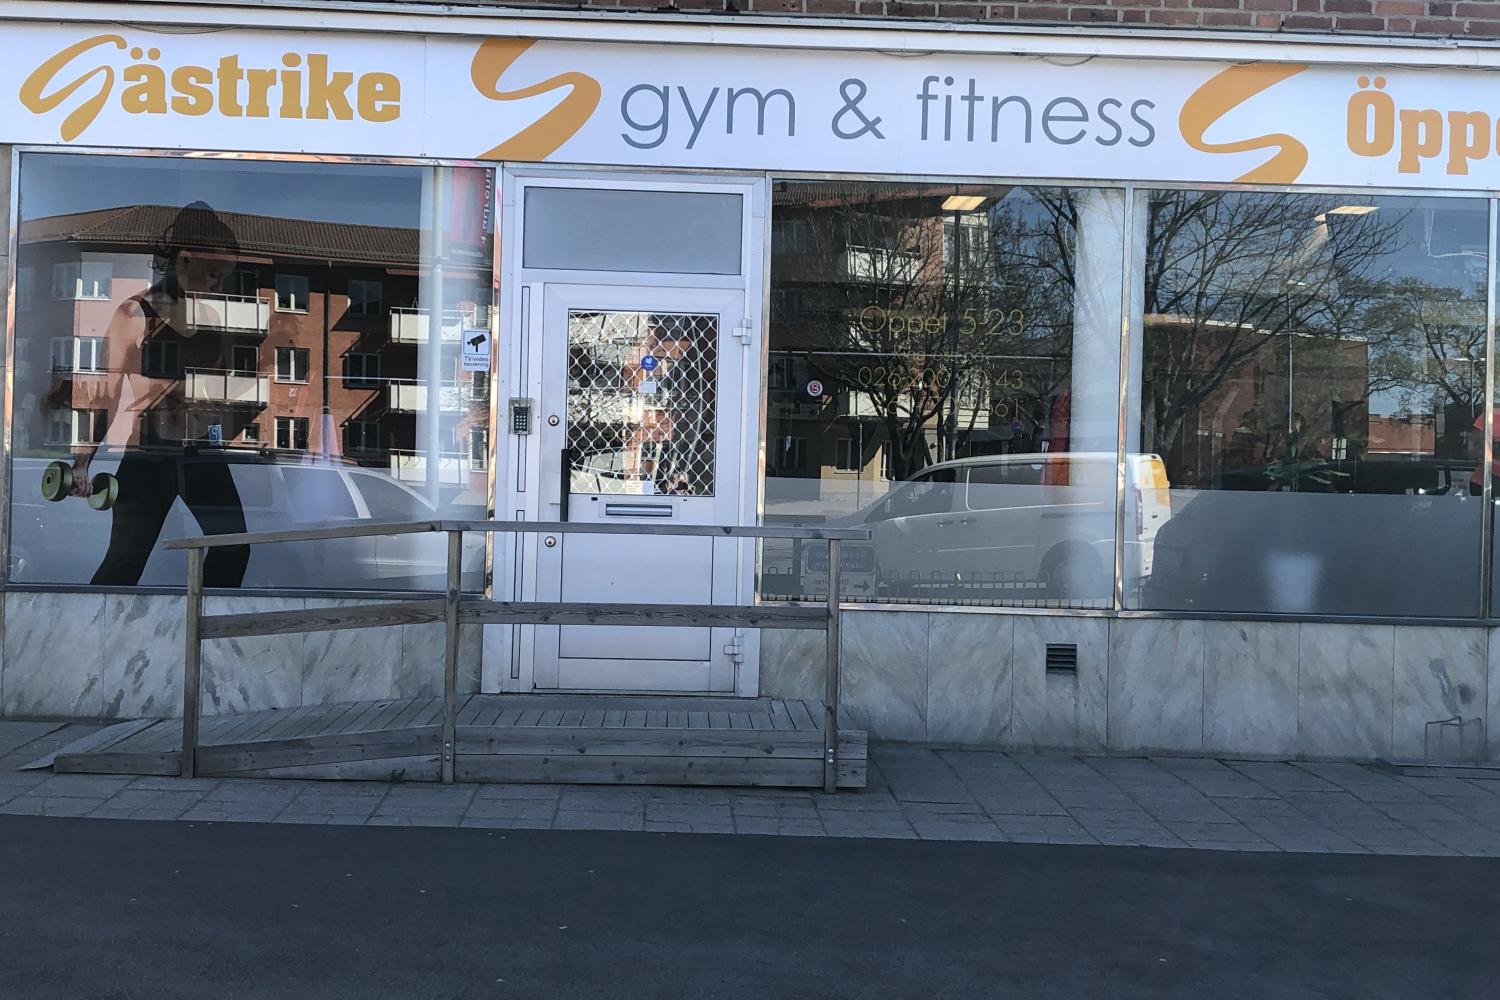 Gästrike Gym & Fitness